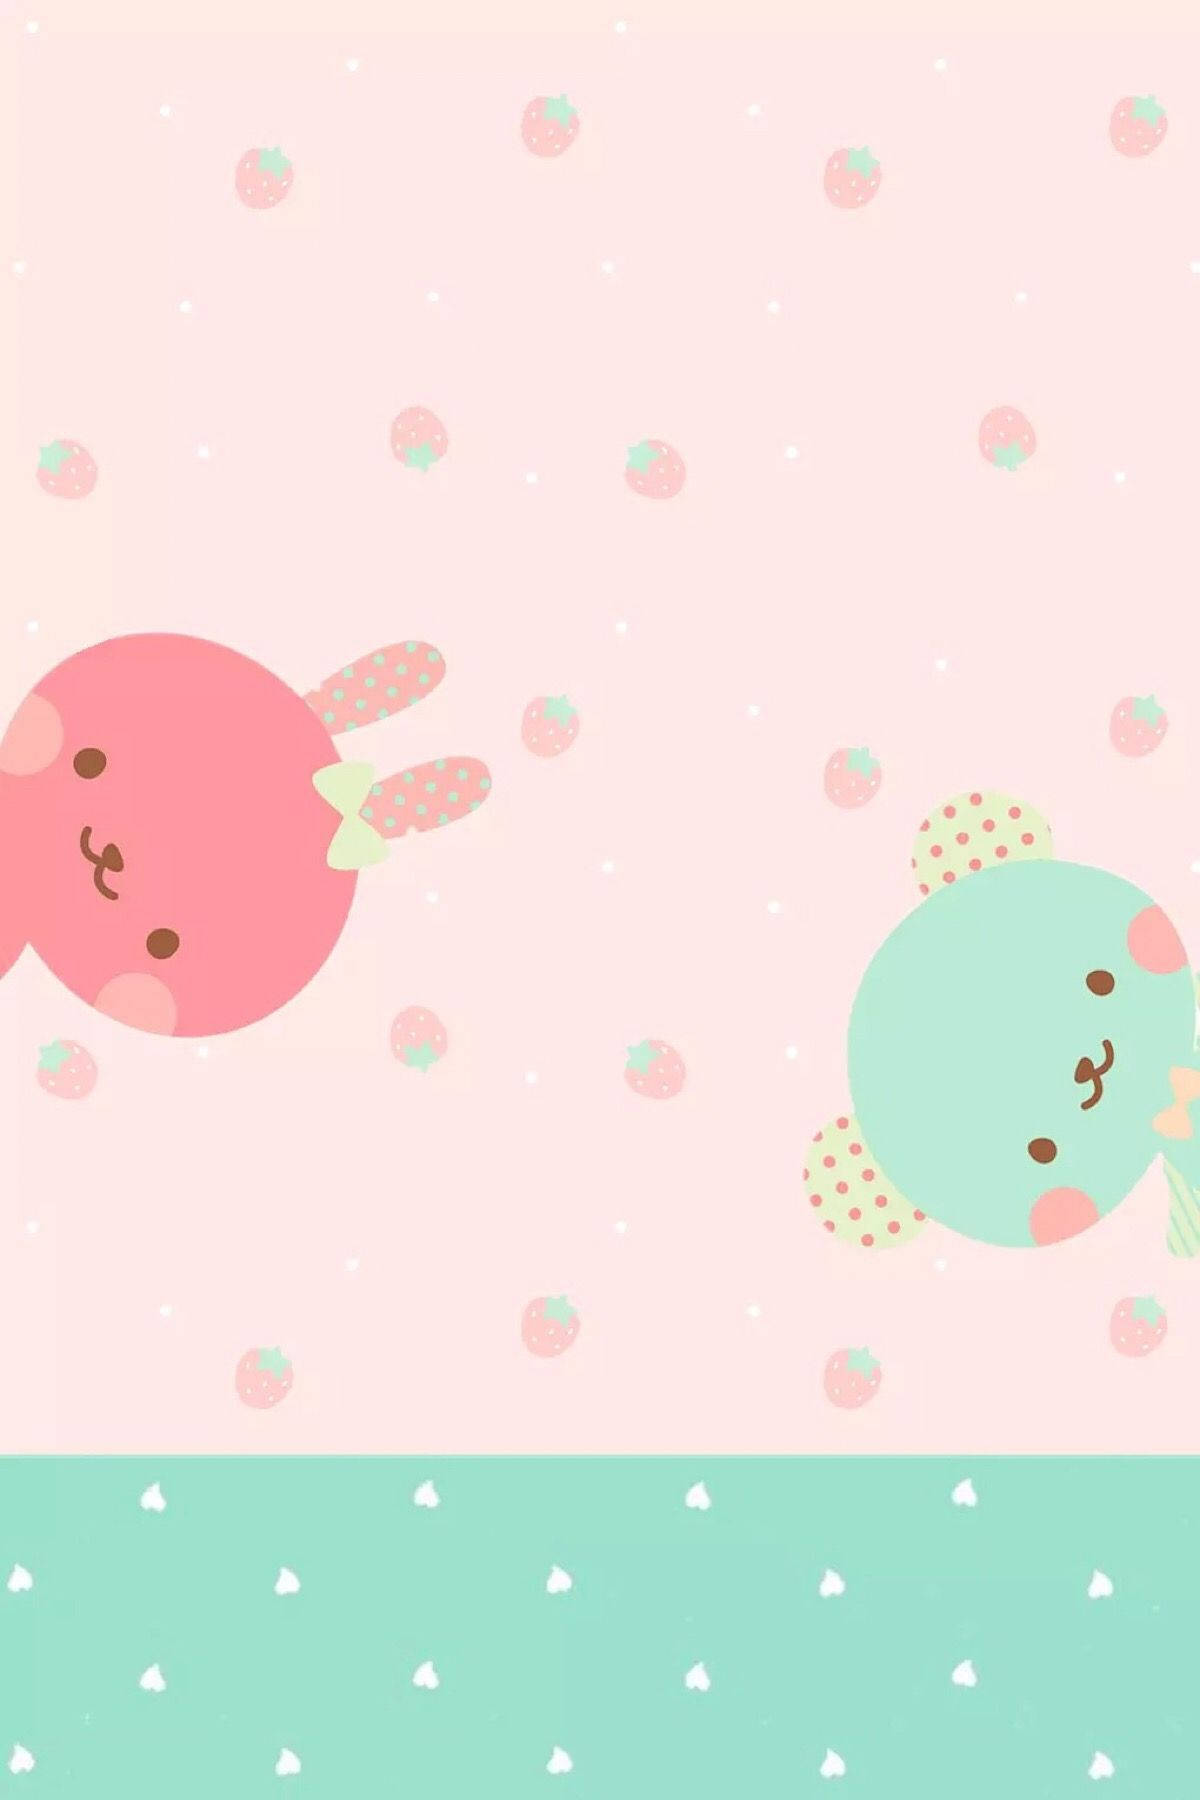 A Sweet Friendship between a Pink Rabbit and Green Bear Wallpaper